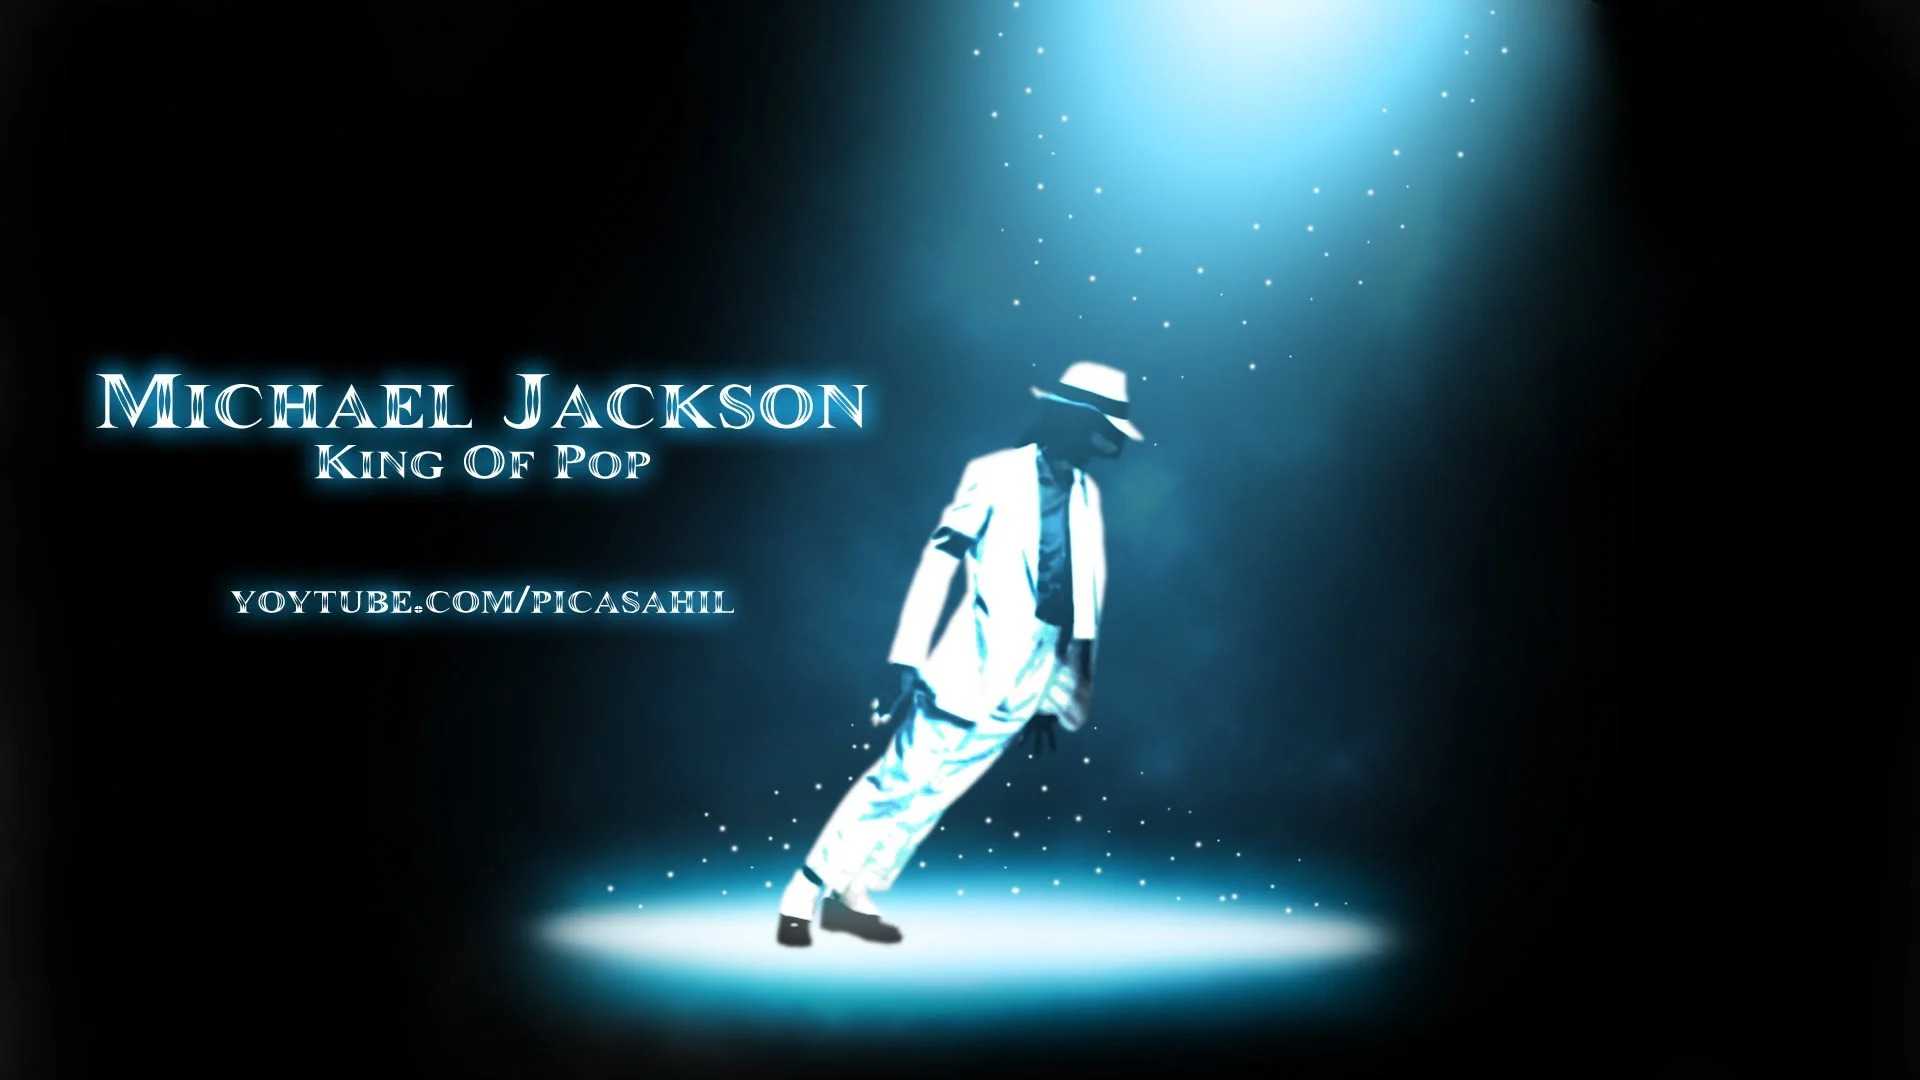 Michael Jackson Wallpaper PC Free HD Wallpaper